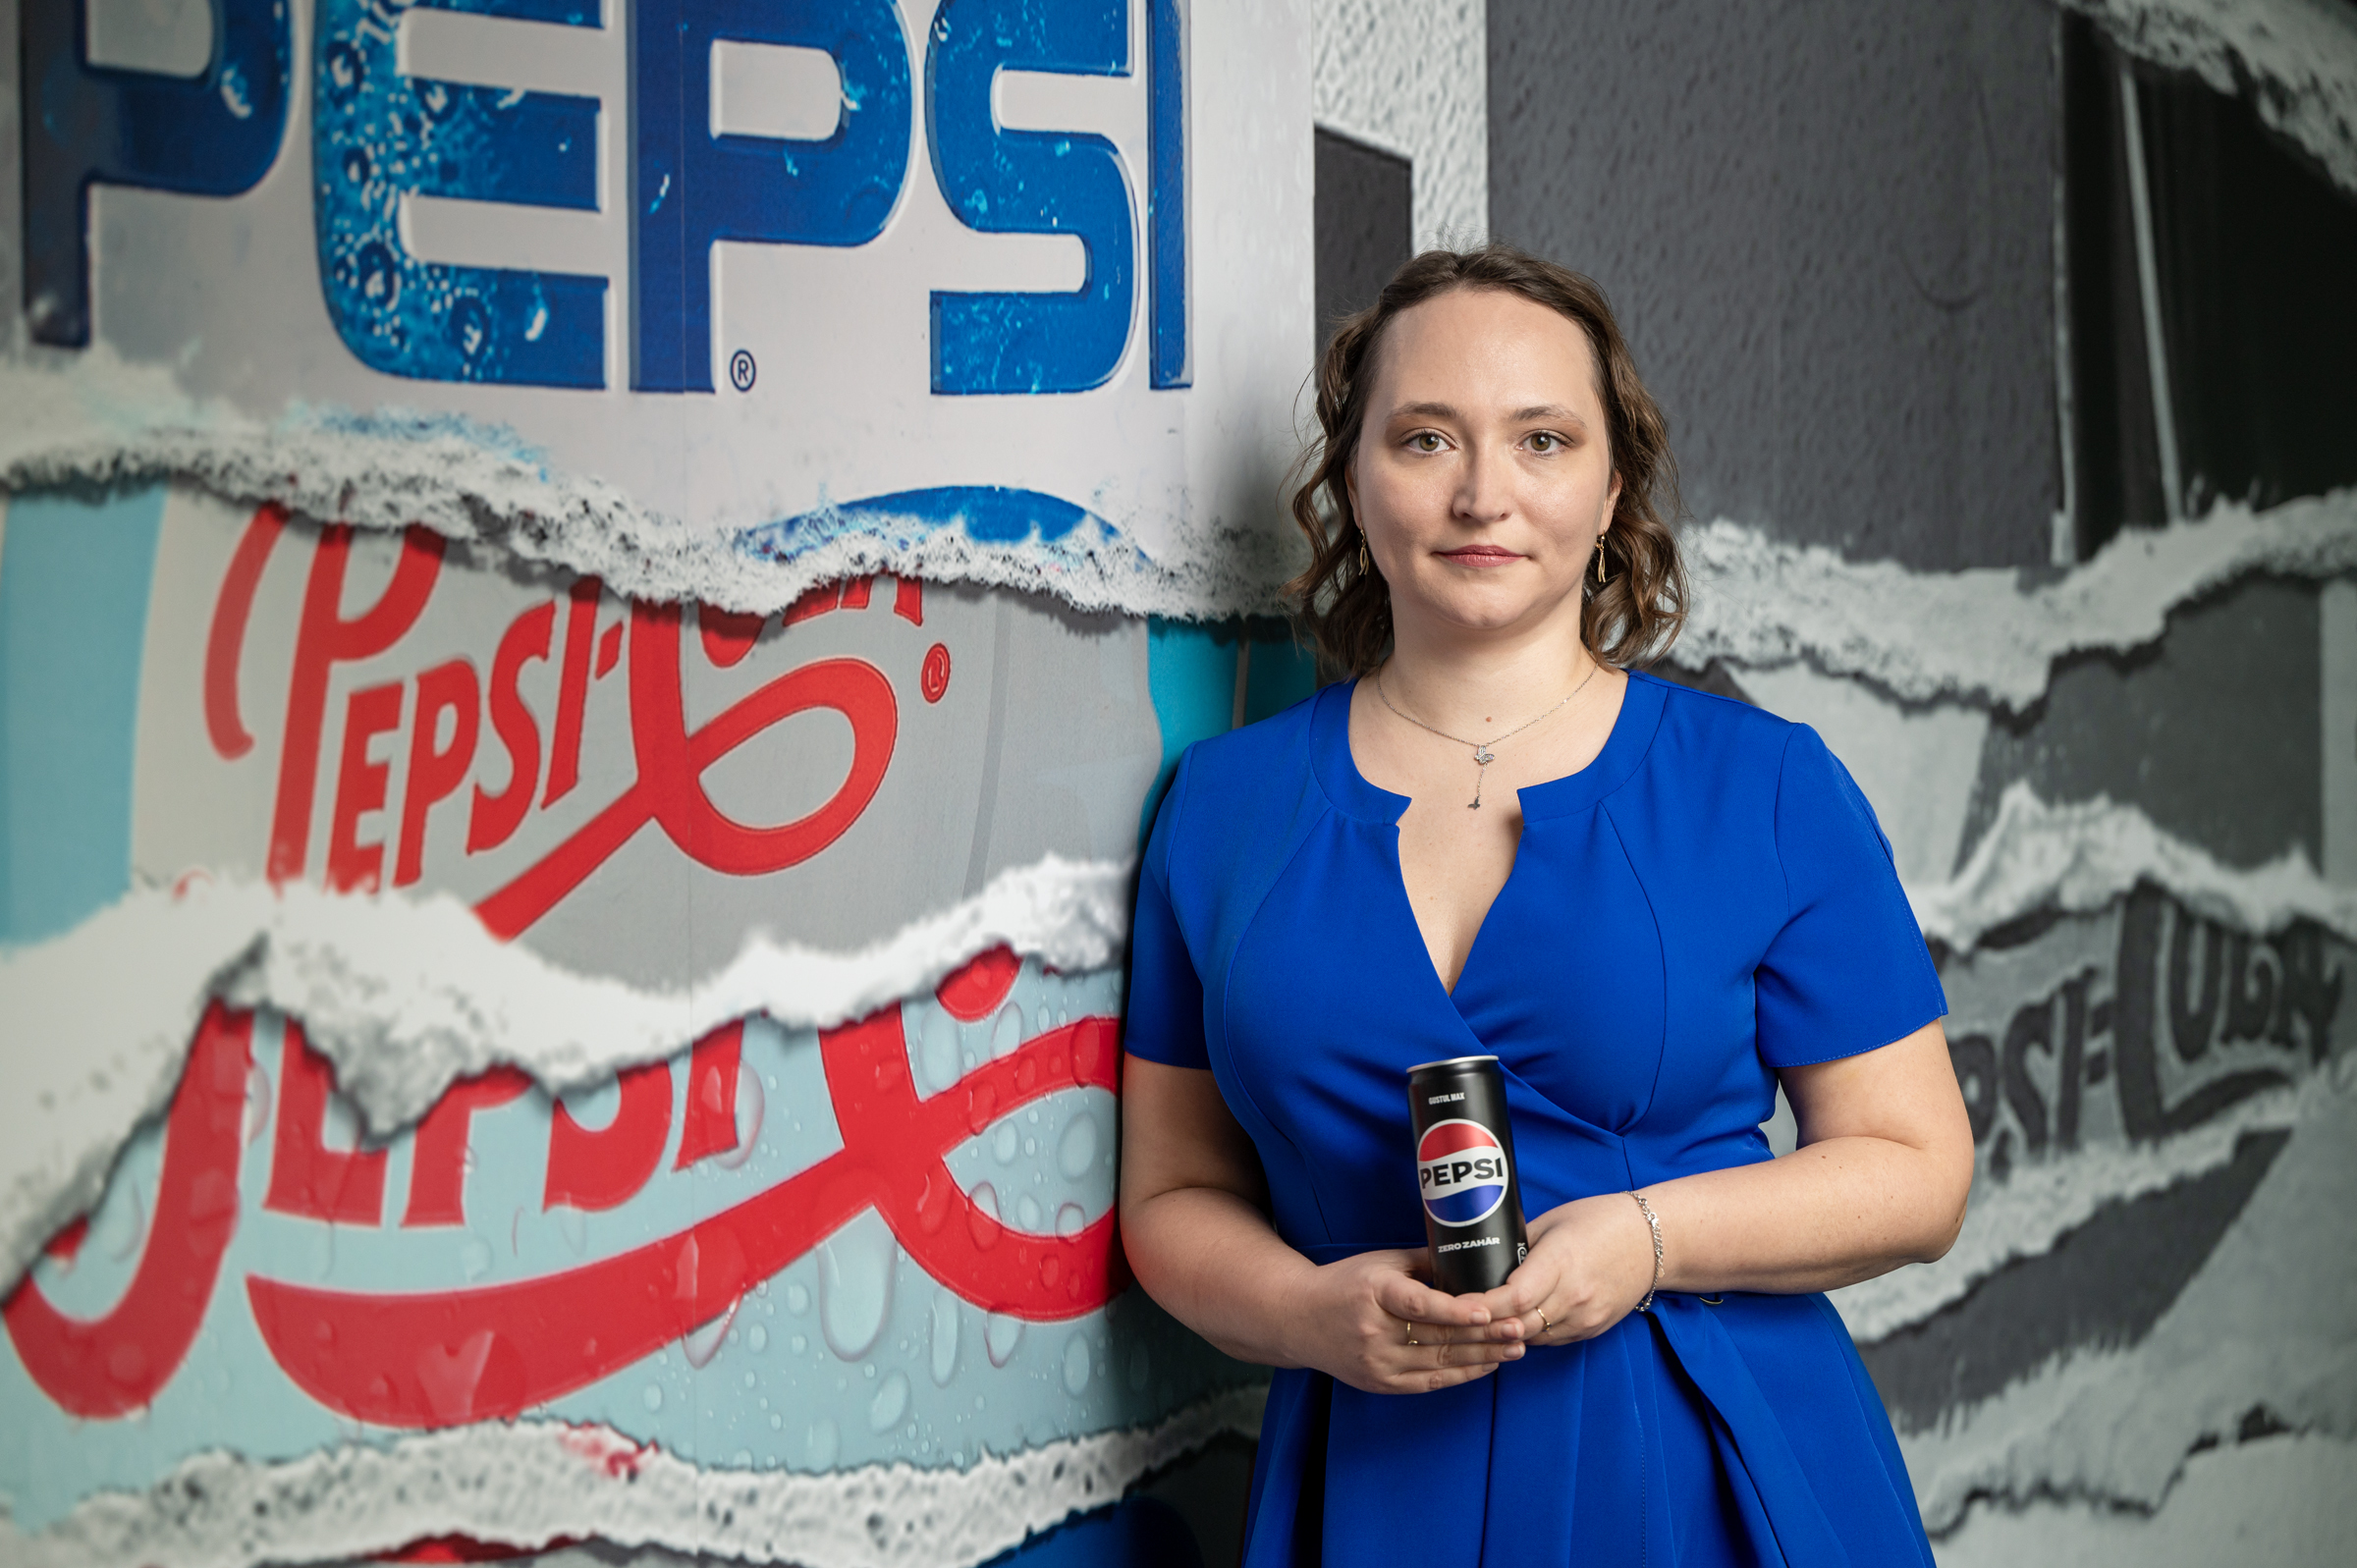 PepsiCo a numit-o pe Silvia Petre în funcţia de director de HR în regiune. În România, PepsiCo are peste 1.600 de angajaţi